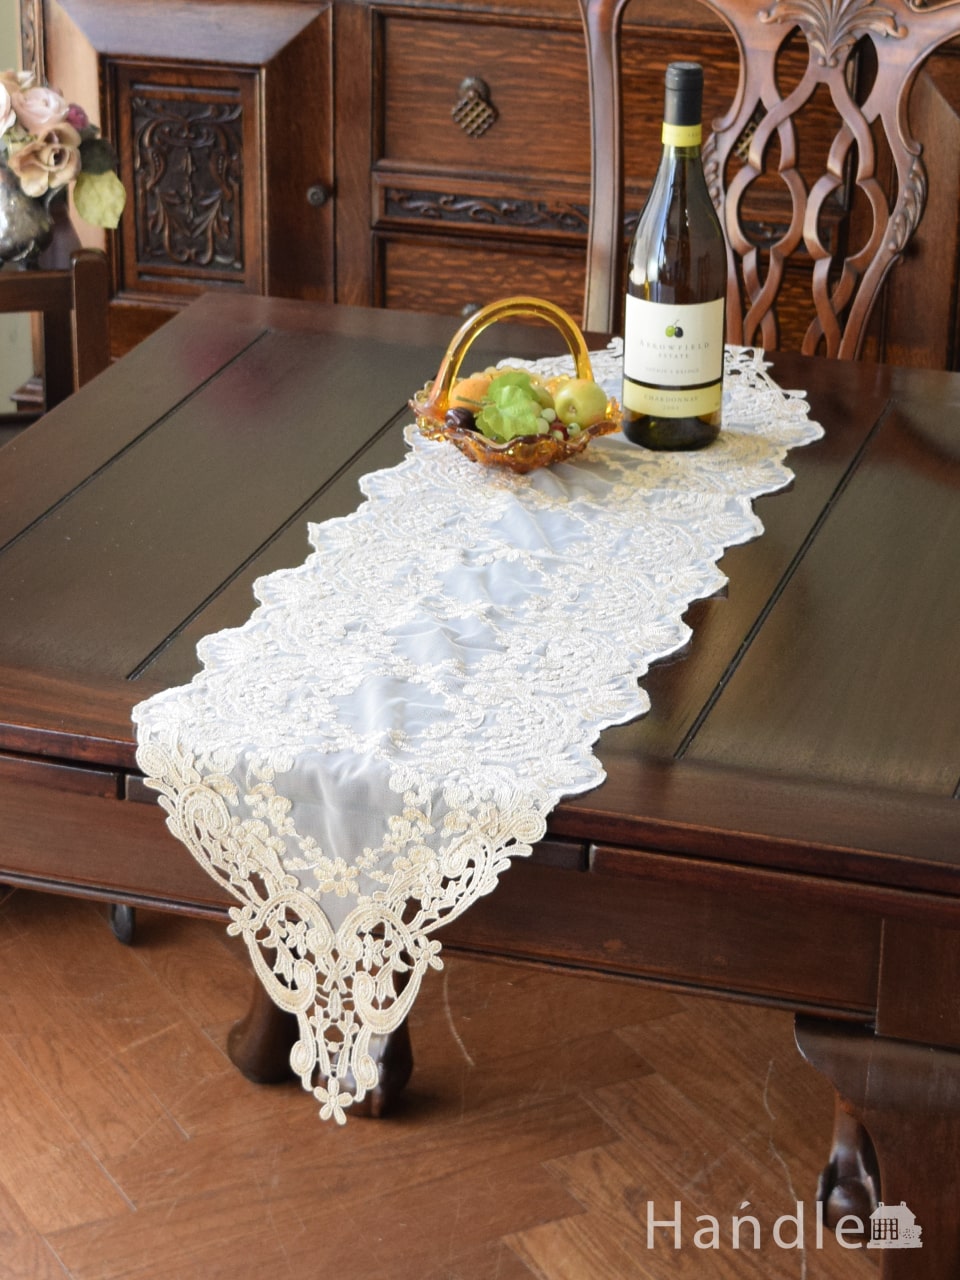 フレンチアンティーク調のテーブルランナー、華やかなお花の刺繍のレース120×30 (n20-110)